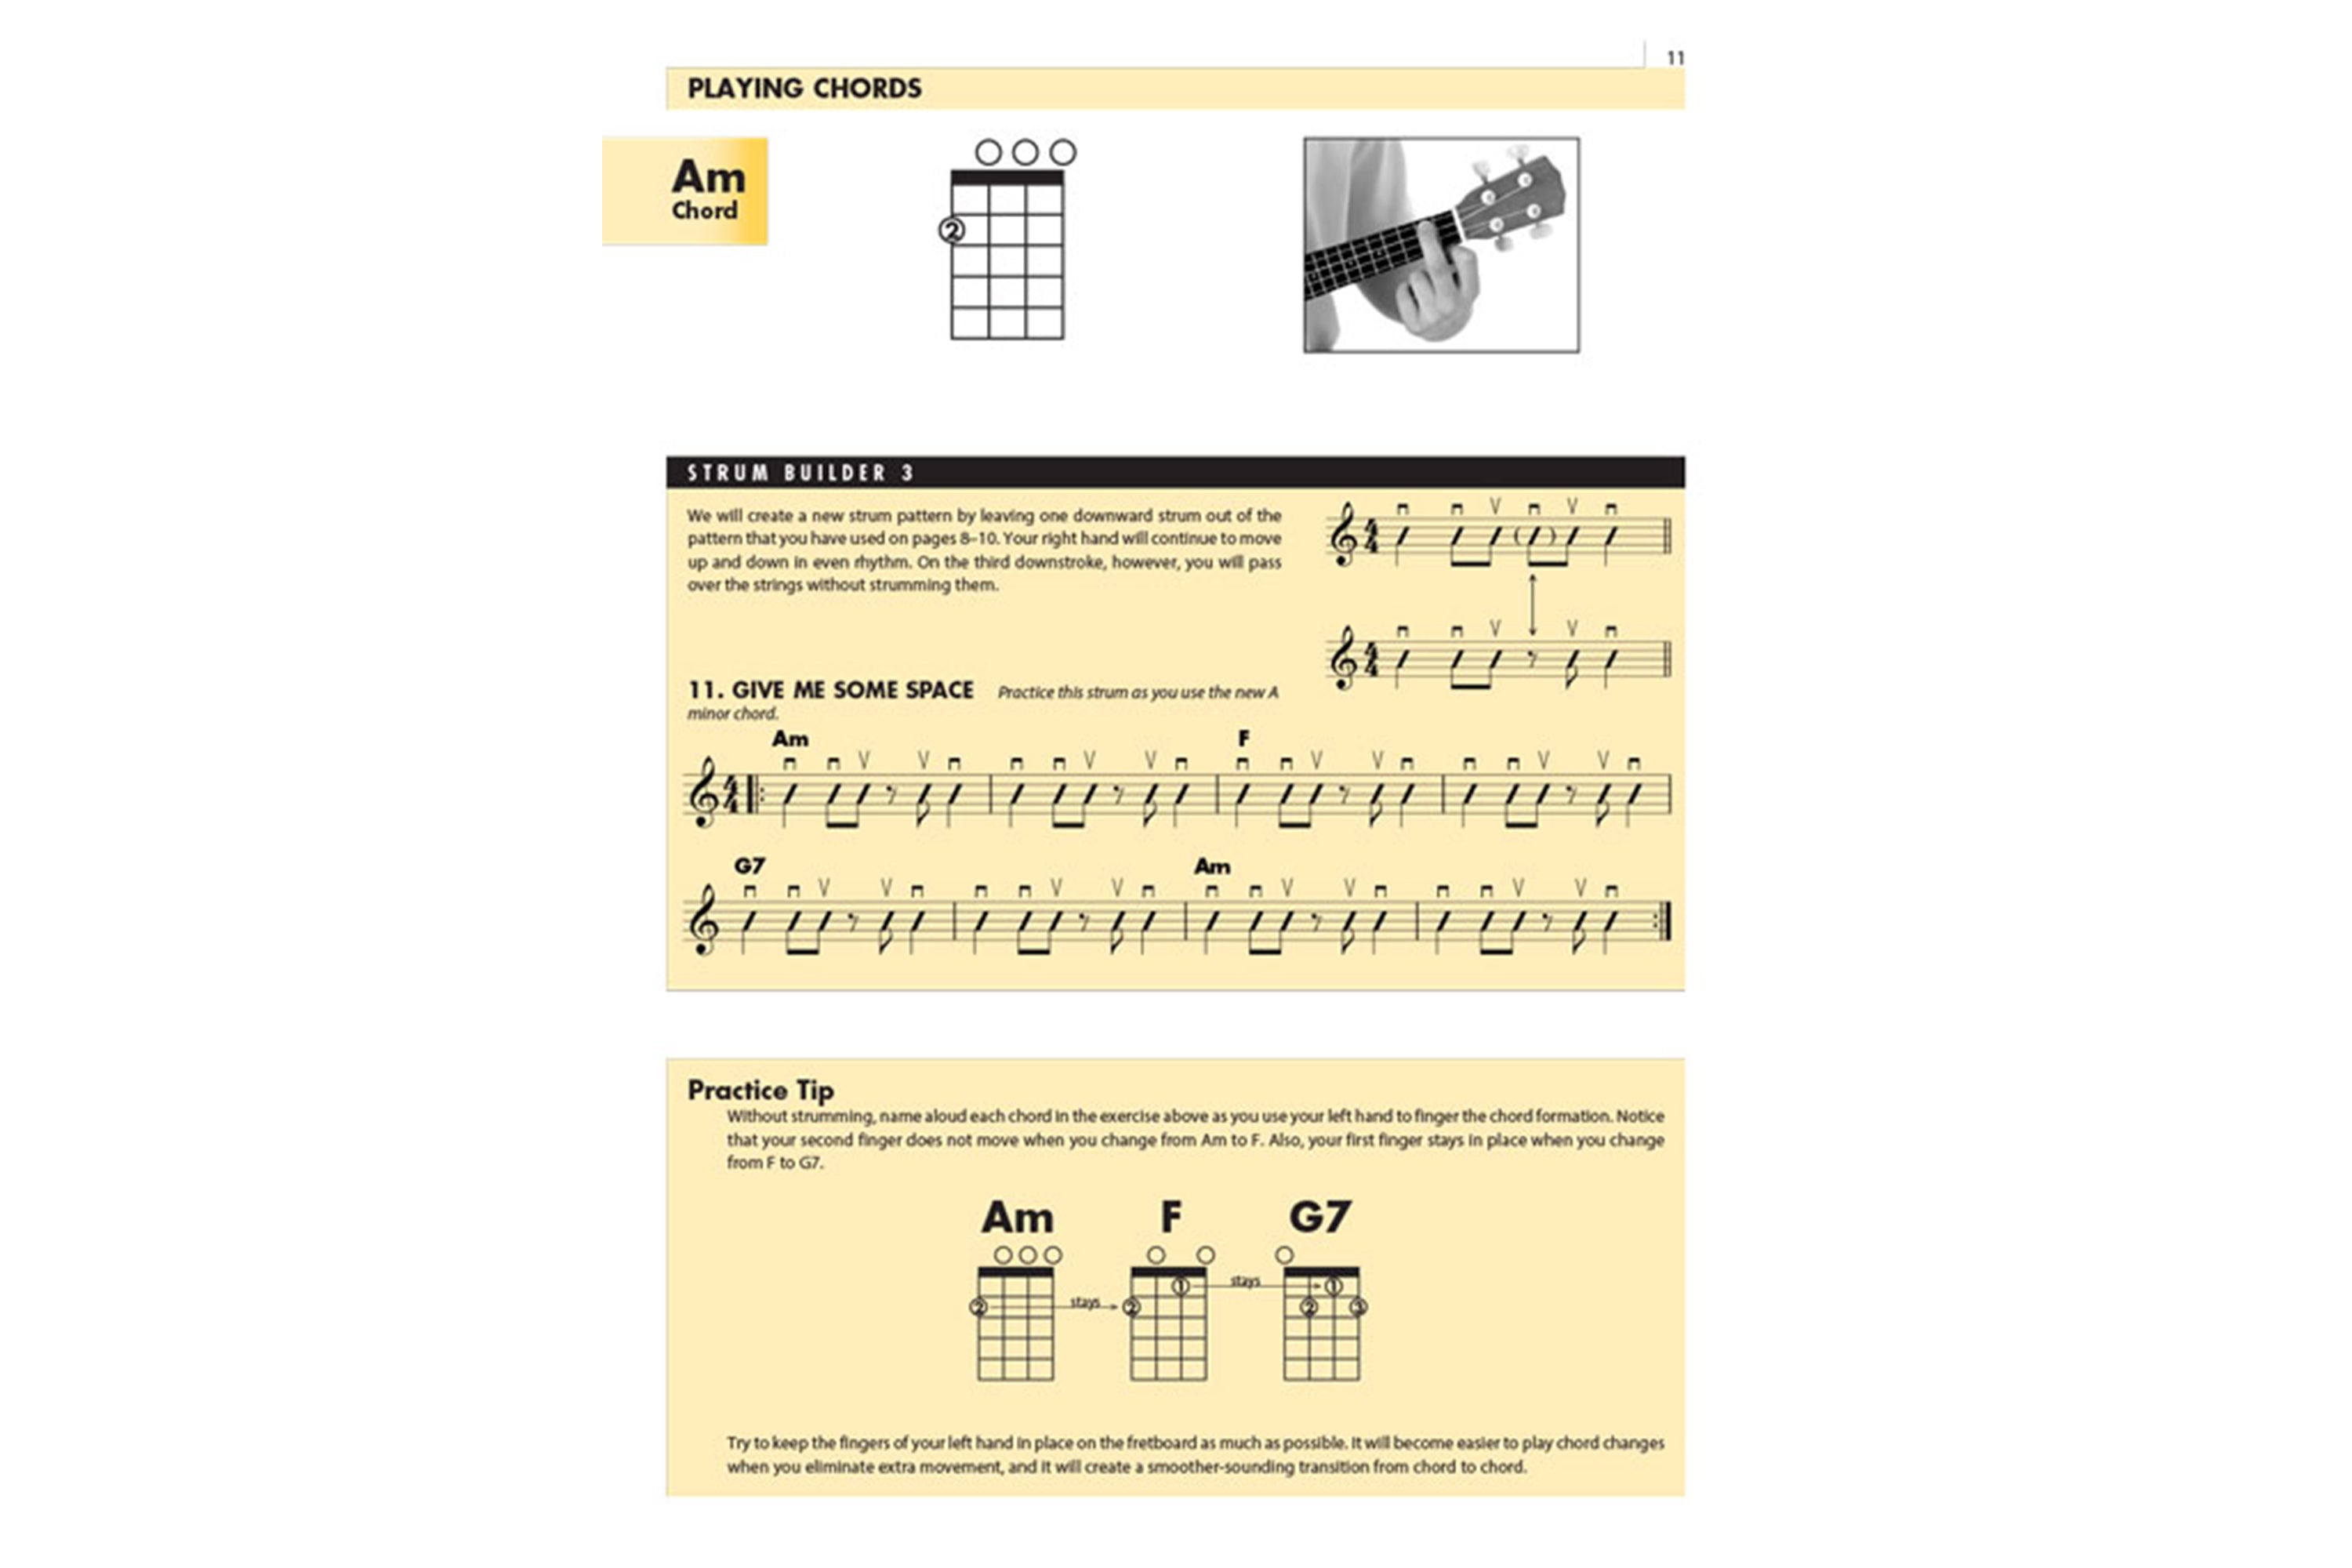 Hal Leonard Essential Elements For Ukulele - Method Book 1 (Book Only)